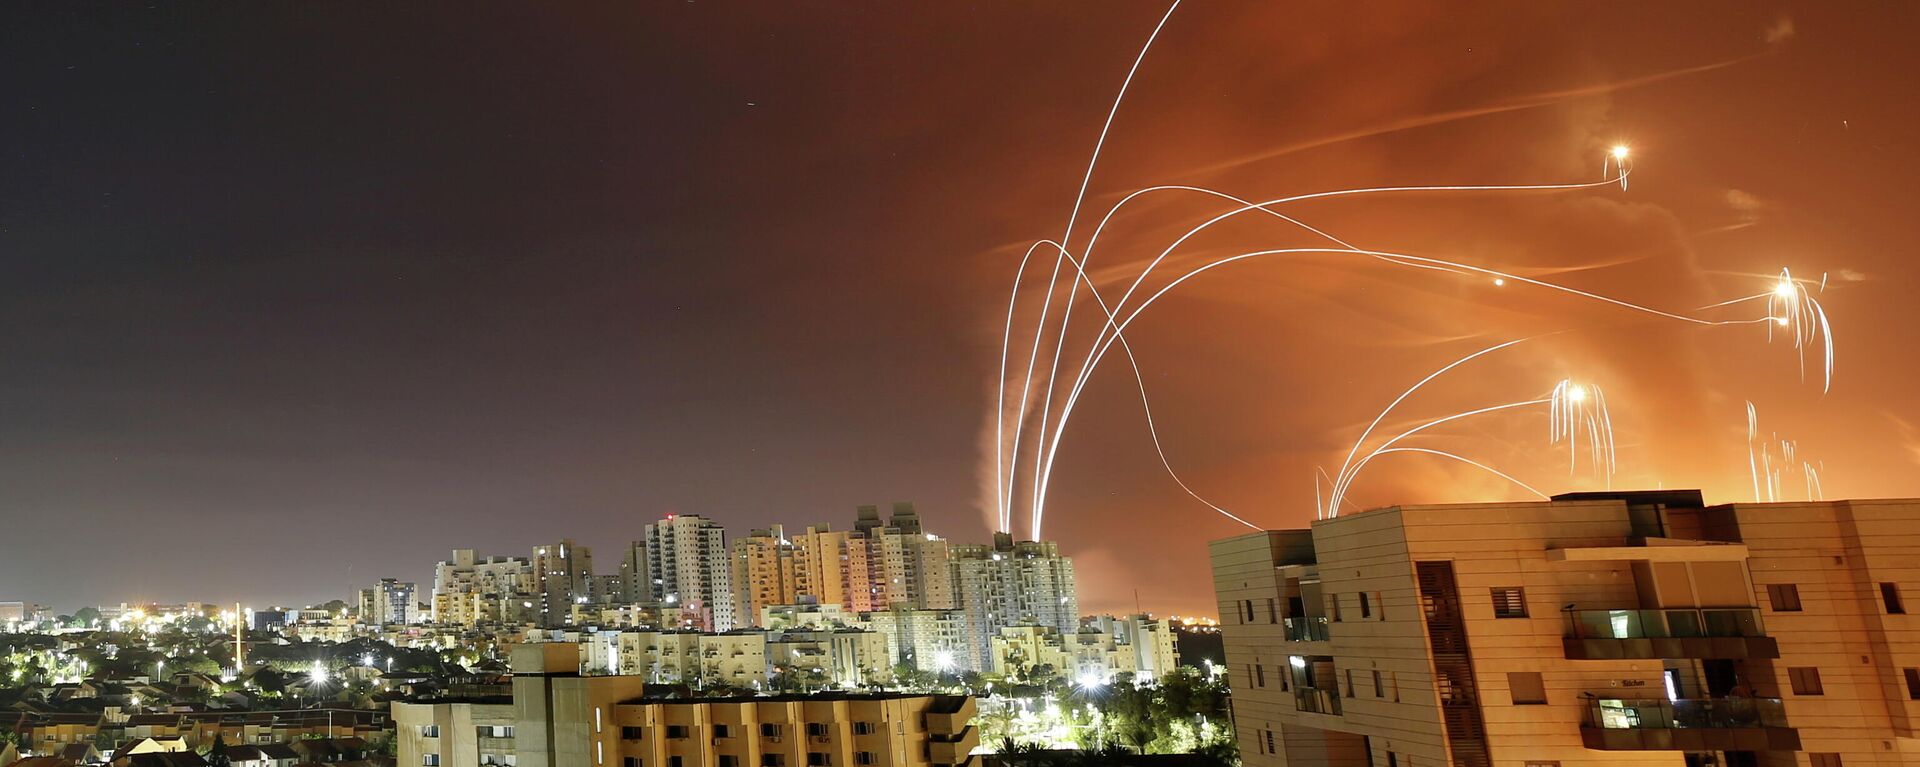 Ataques con cohetes desde el territorio palestino de Gaza contra instalaciones israelíes - Sputnik Mundo, 1920, 12.05.2021